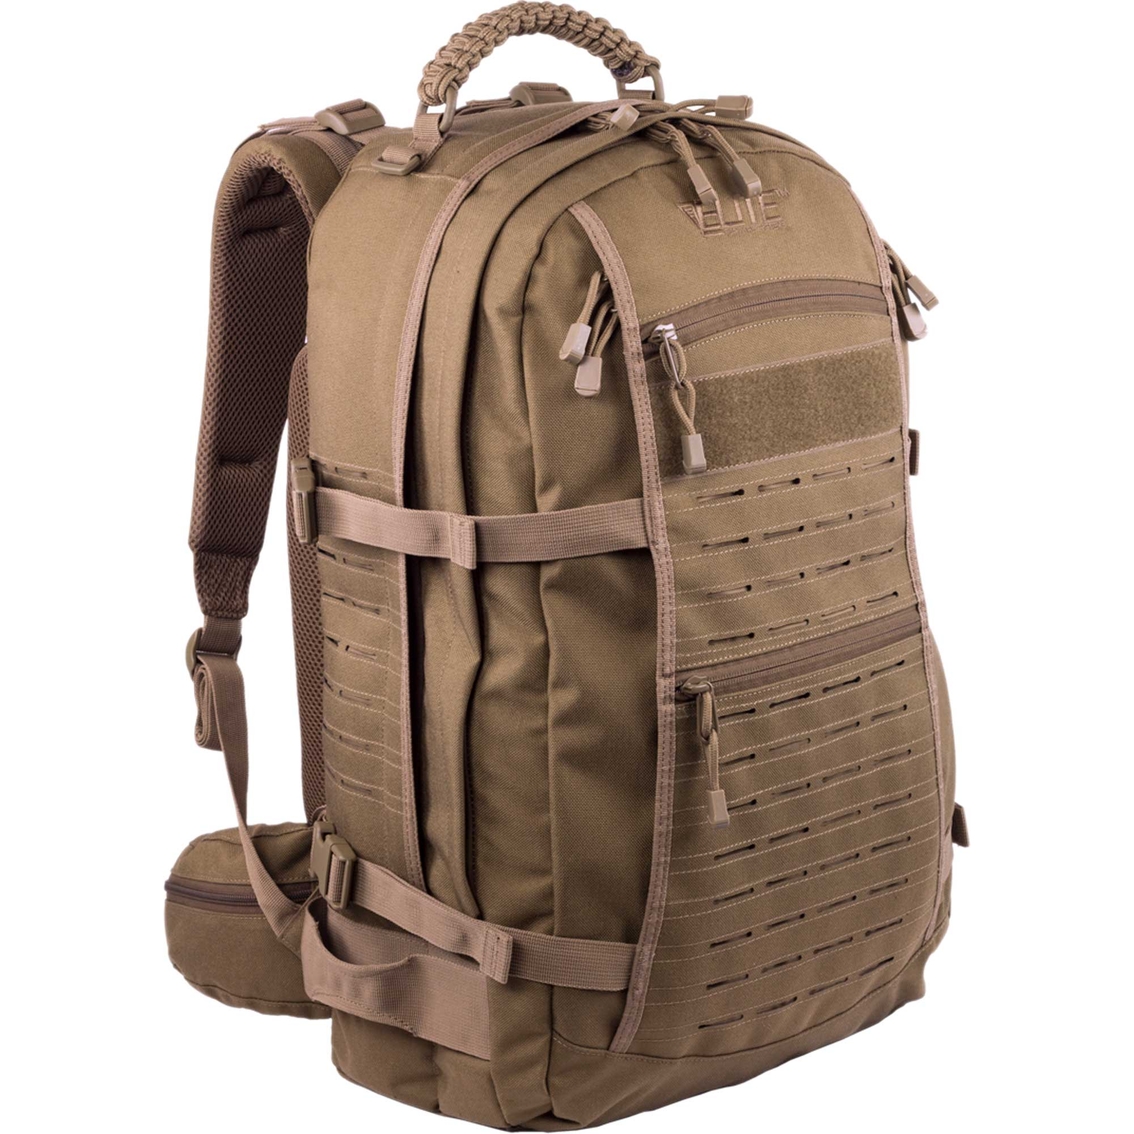 Elite Survival Mission Backpack - Image 1 of 6